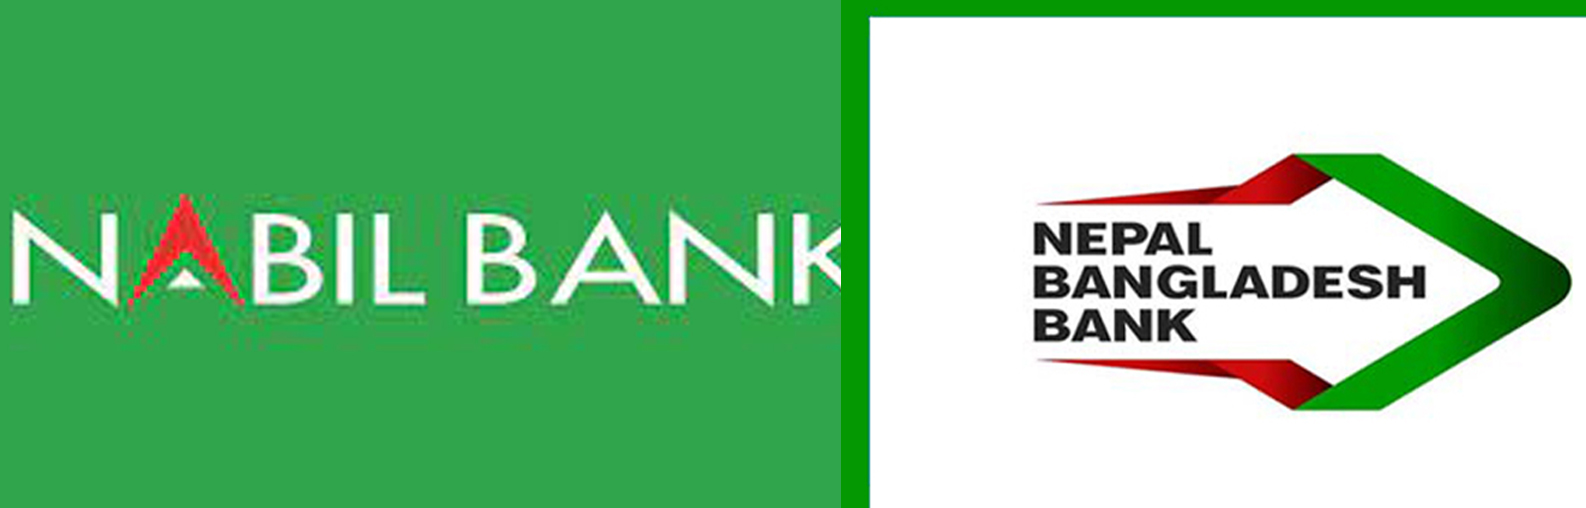 नबिल र नेपाल बंगलादेश बैंकको मर्जरका लागि उपाध्यायको संयोजकत्वमा समिति गठन